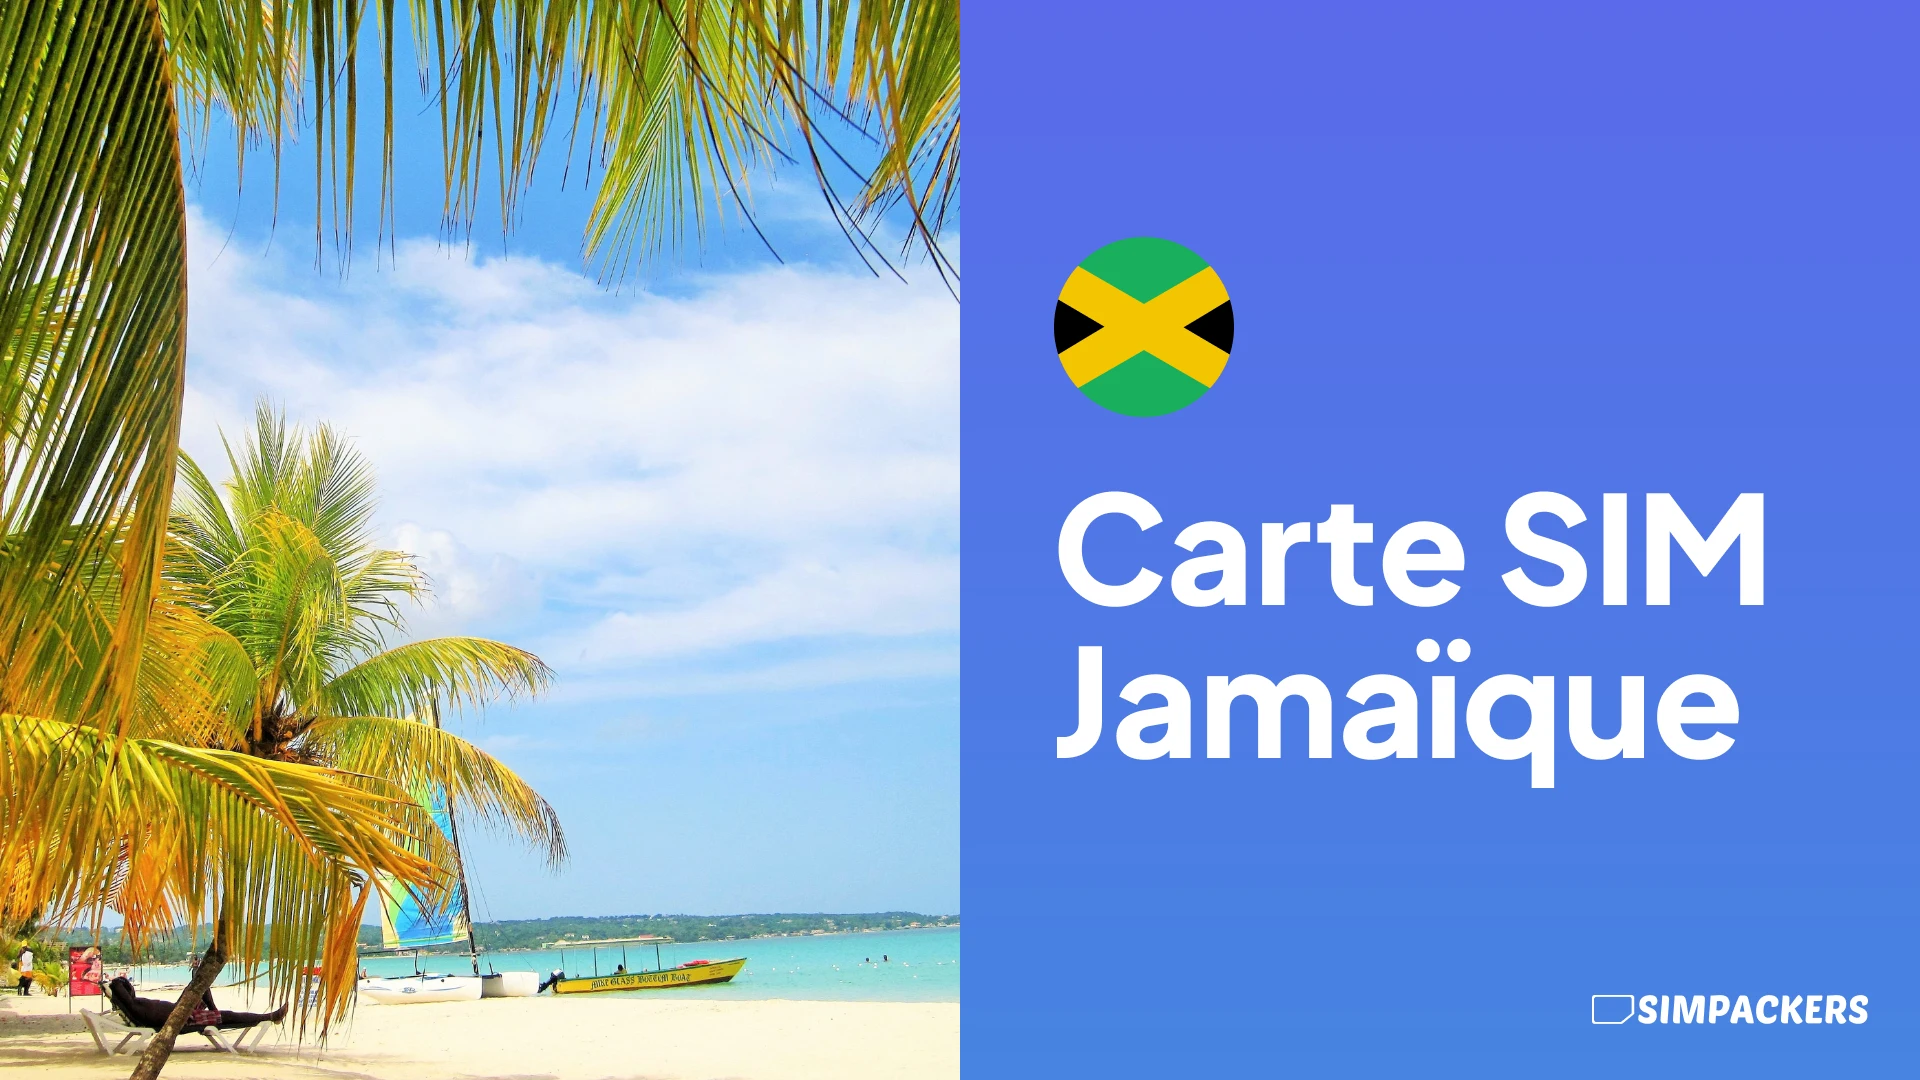 FR/FEATURED_IMAGES/carte-sim-jamaique.webp